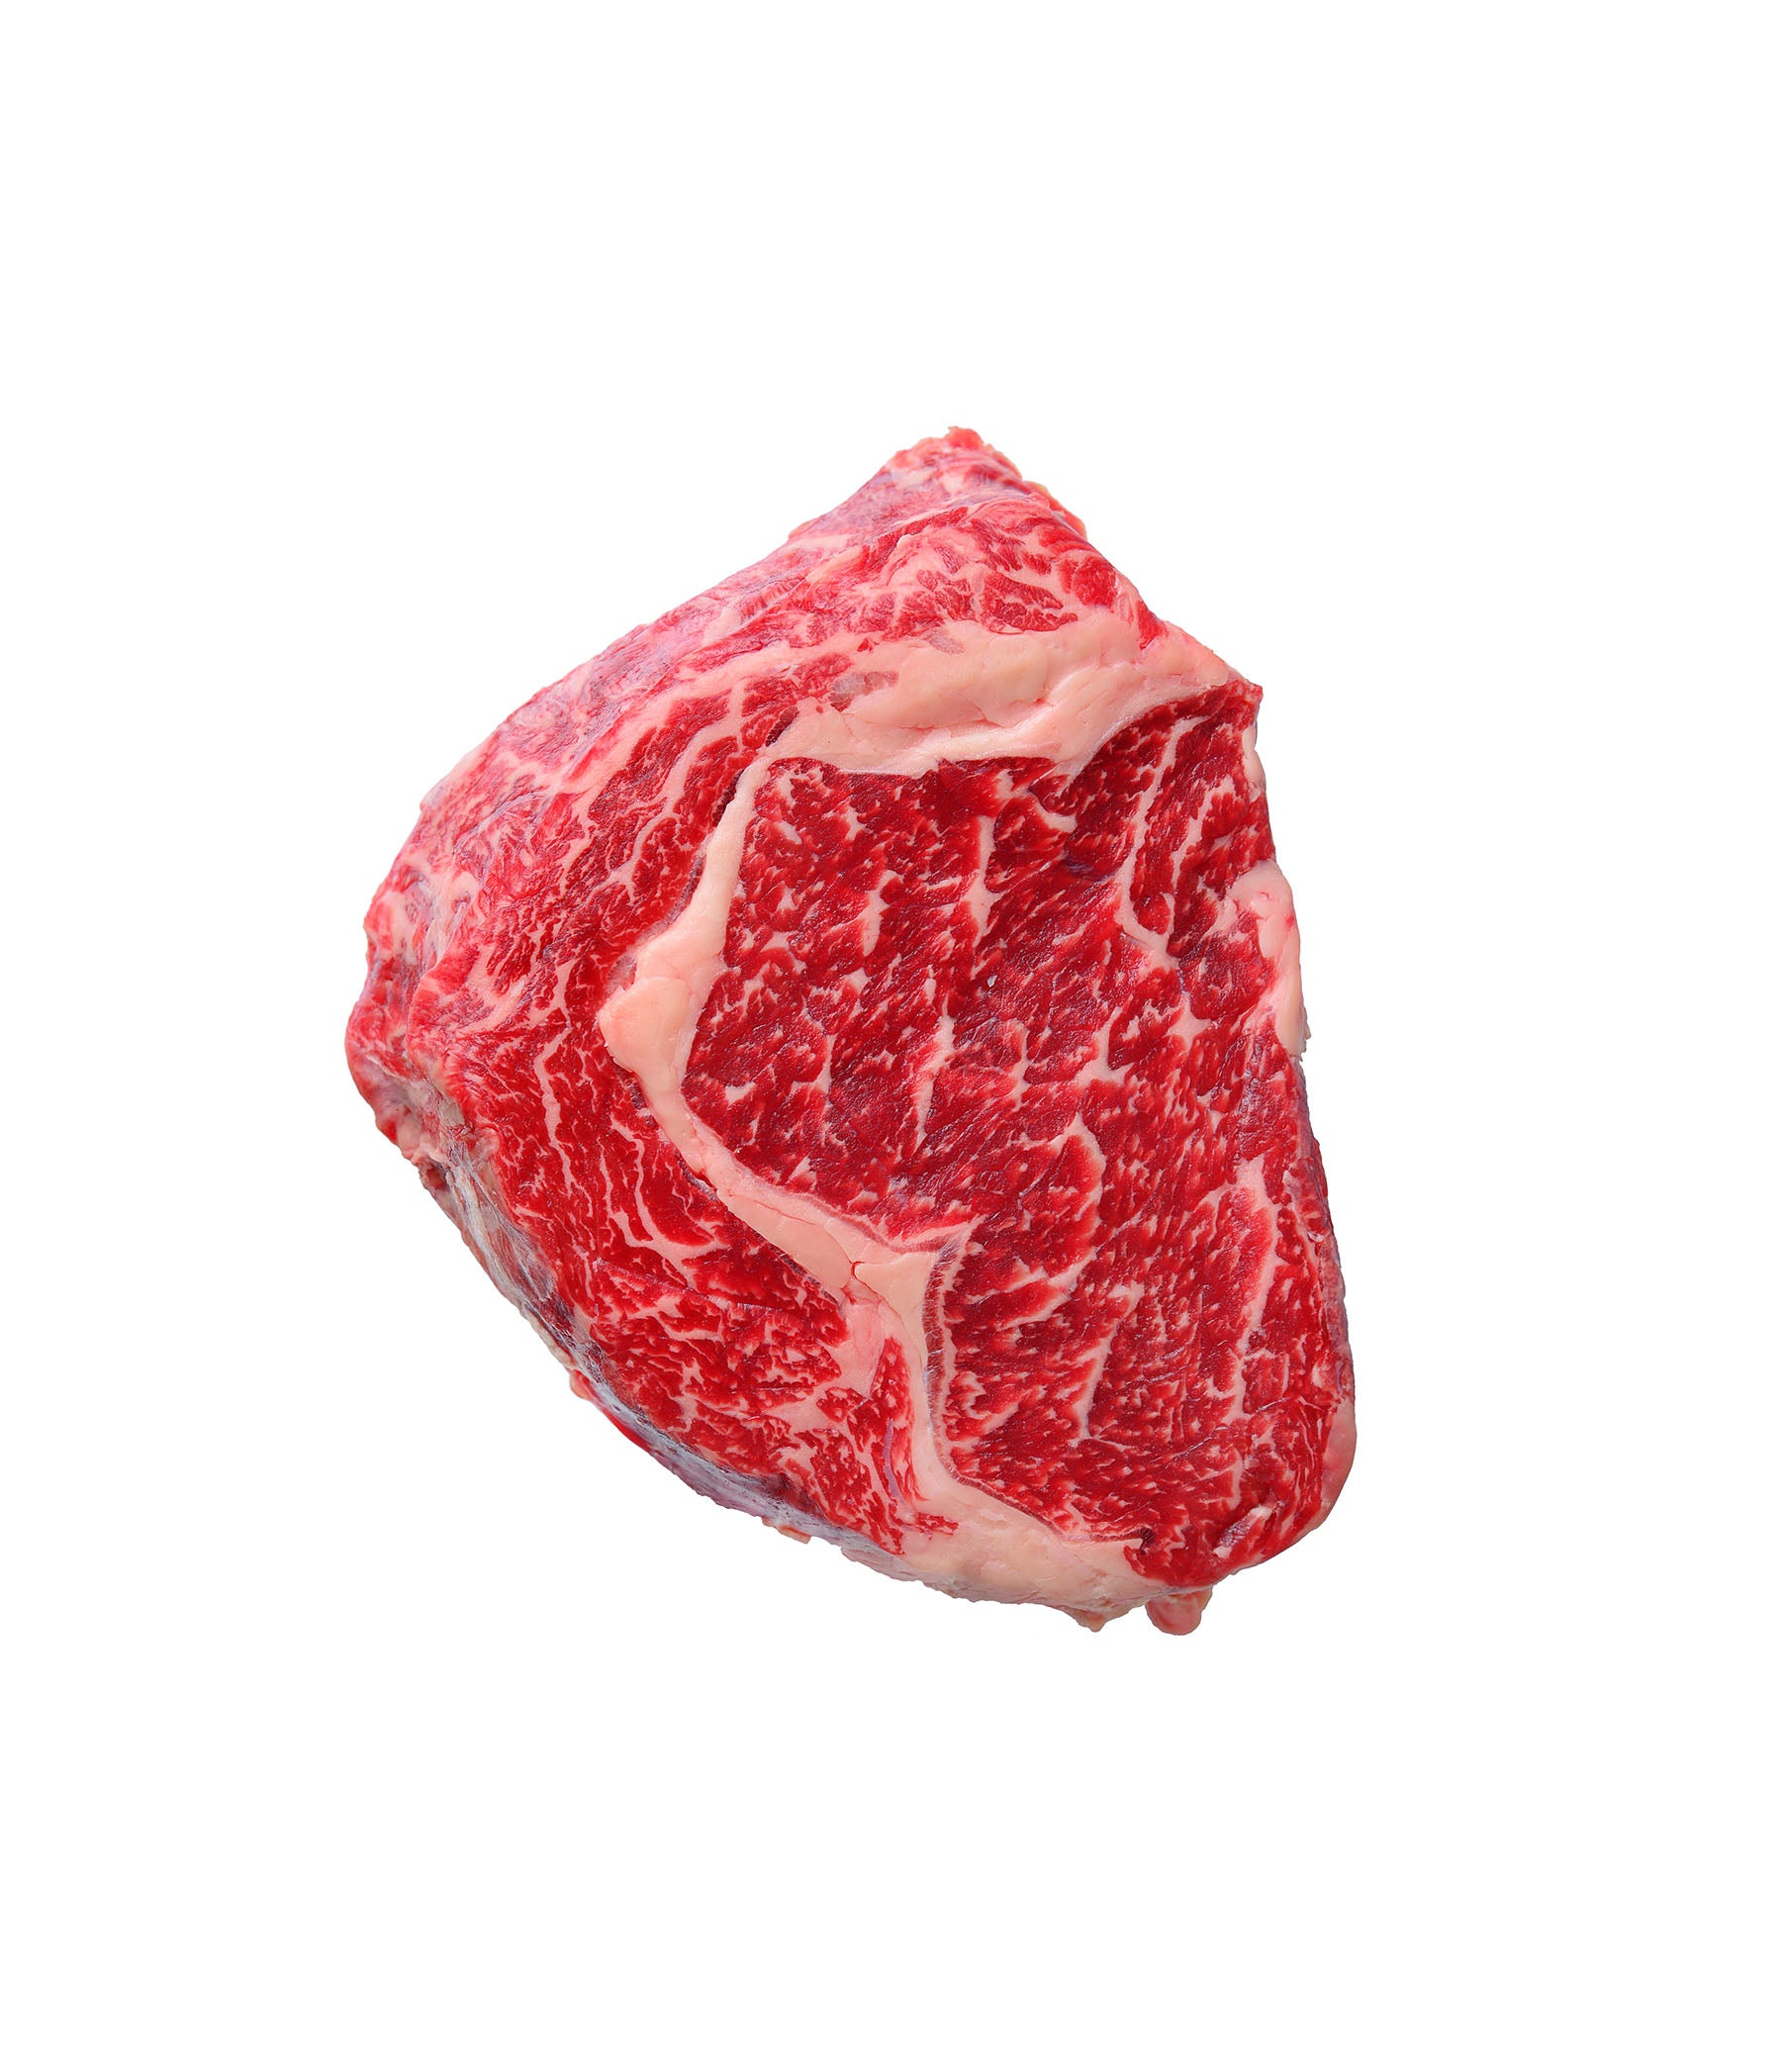 Kumamoto A5 Wagyu Striploin Steak